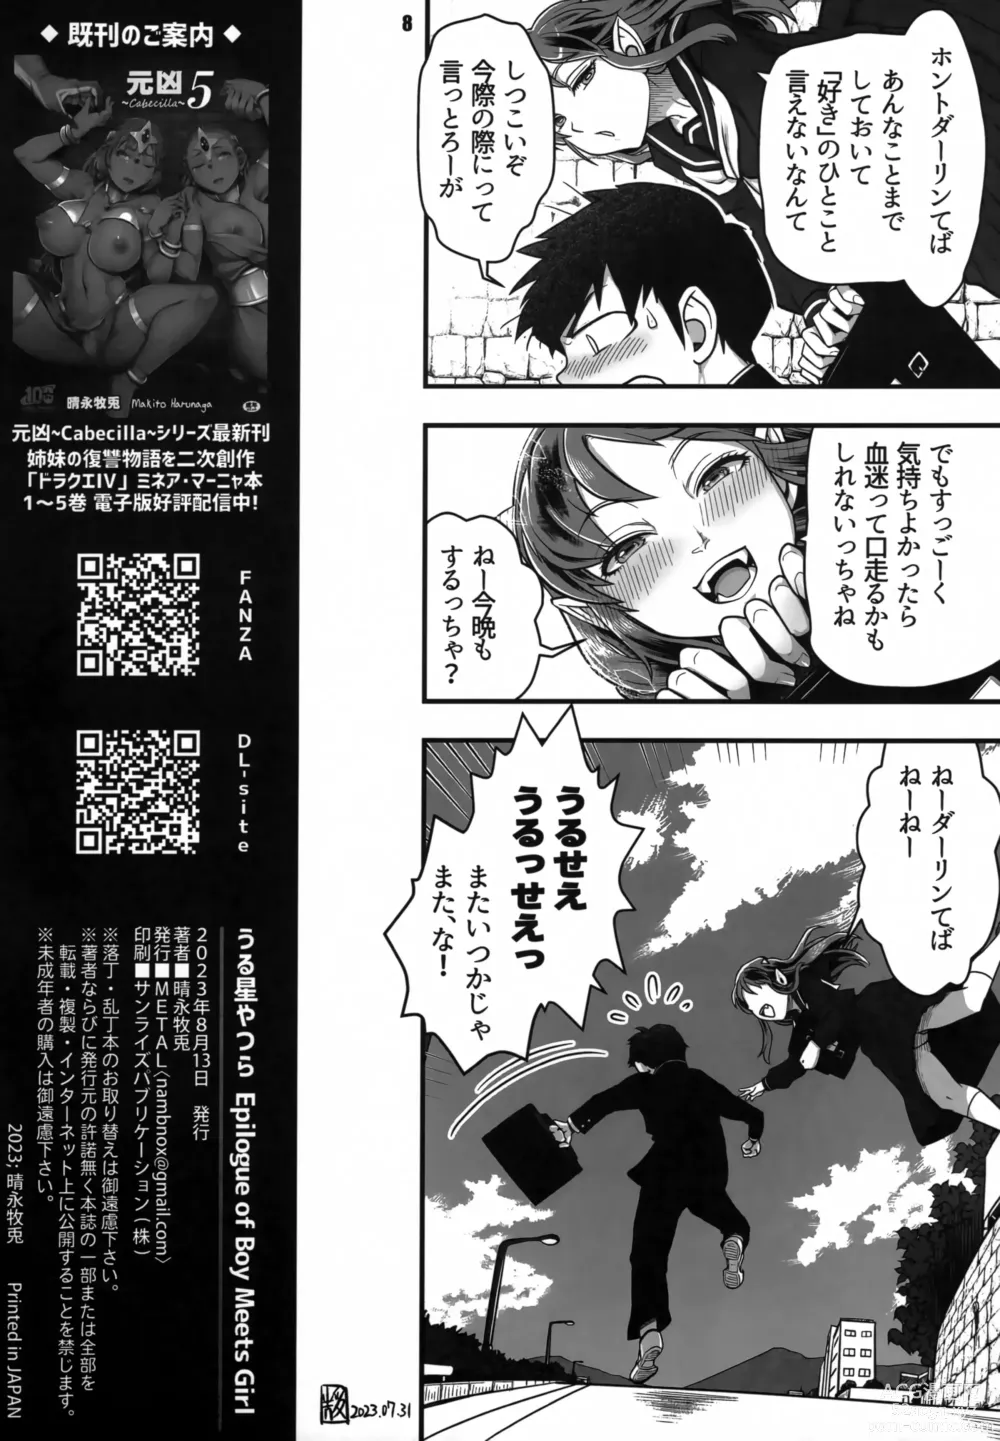 Page 8 of doujinshi Urusei Yatsura Epilogue of Boy meets Girl